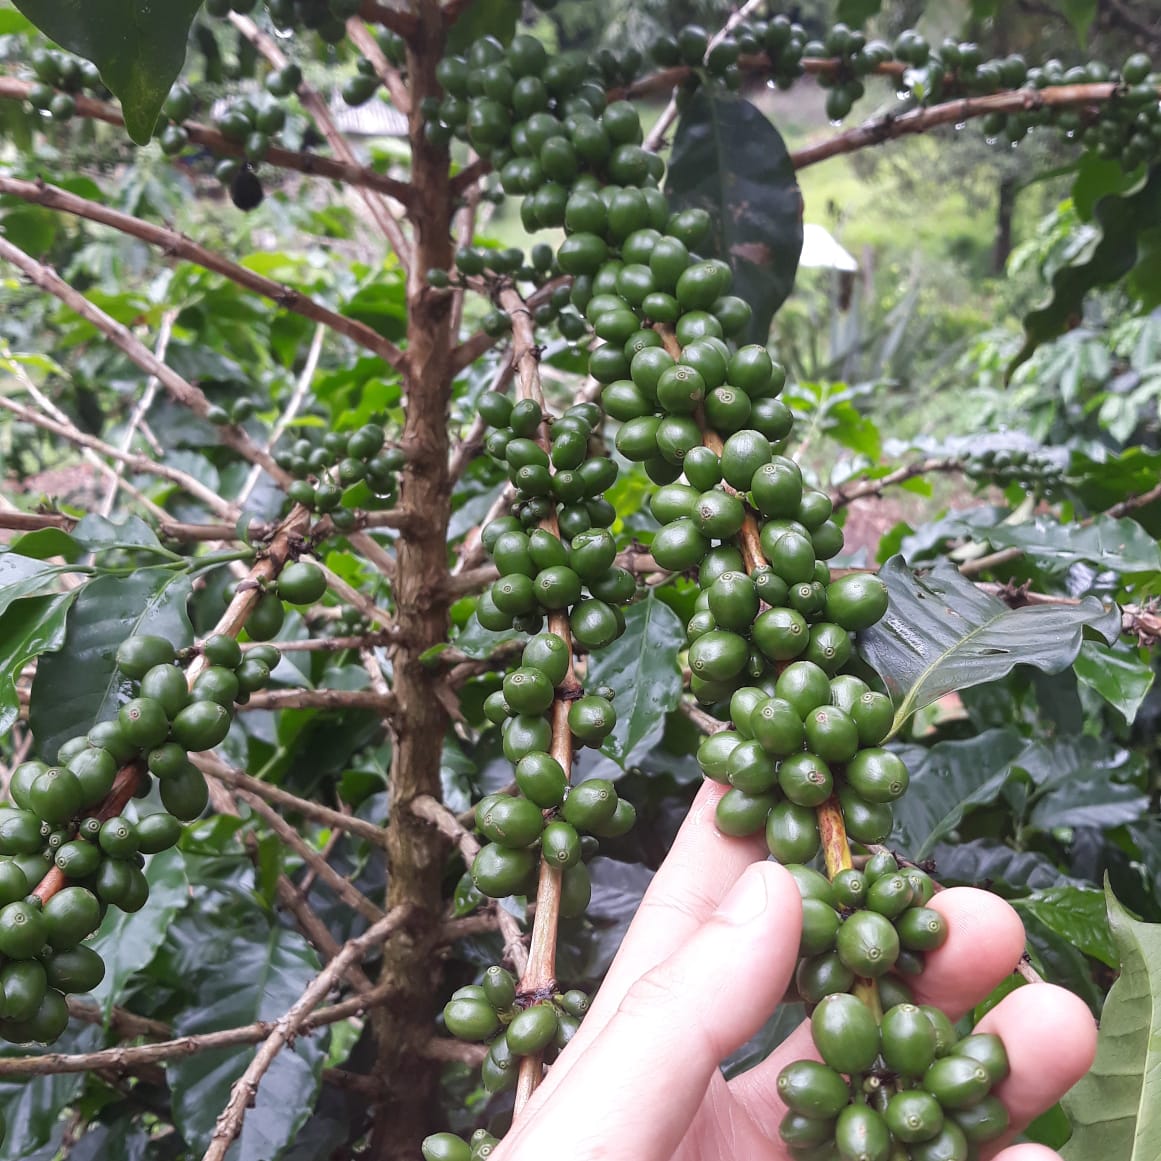 Brazilian coffee green